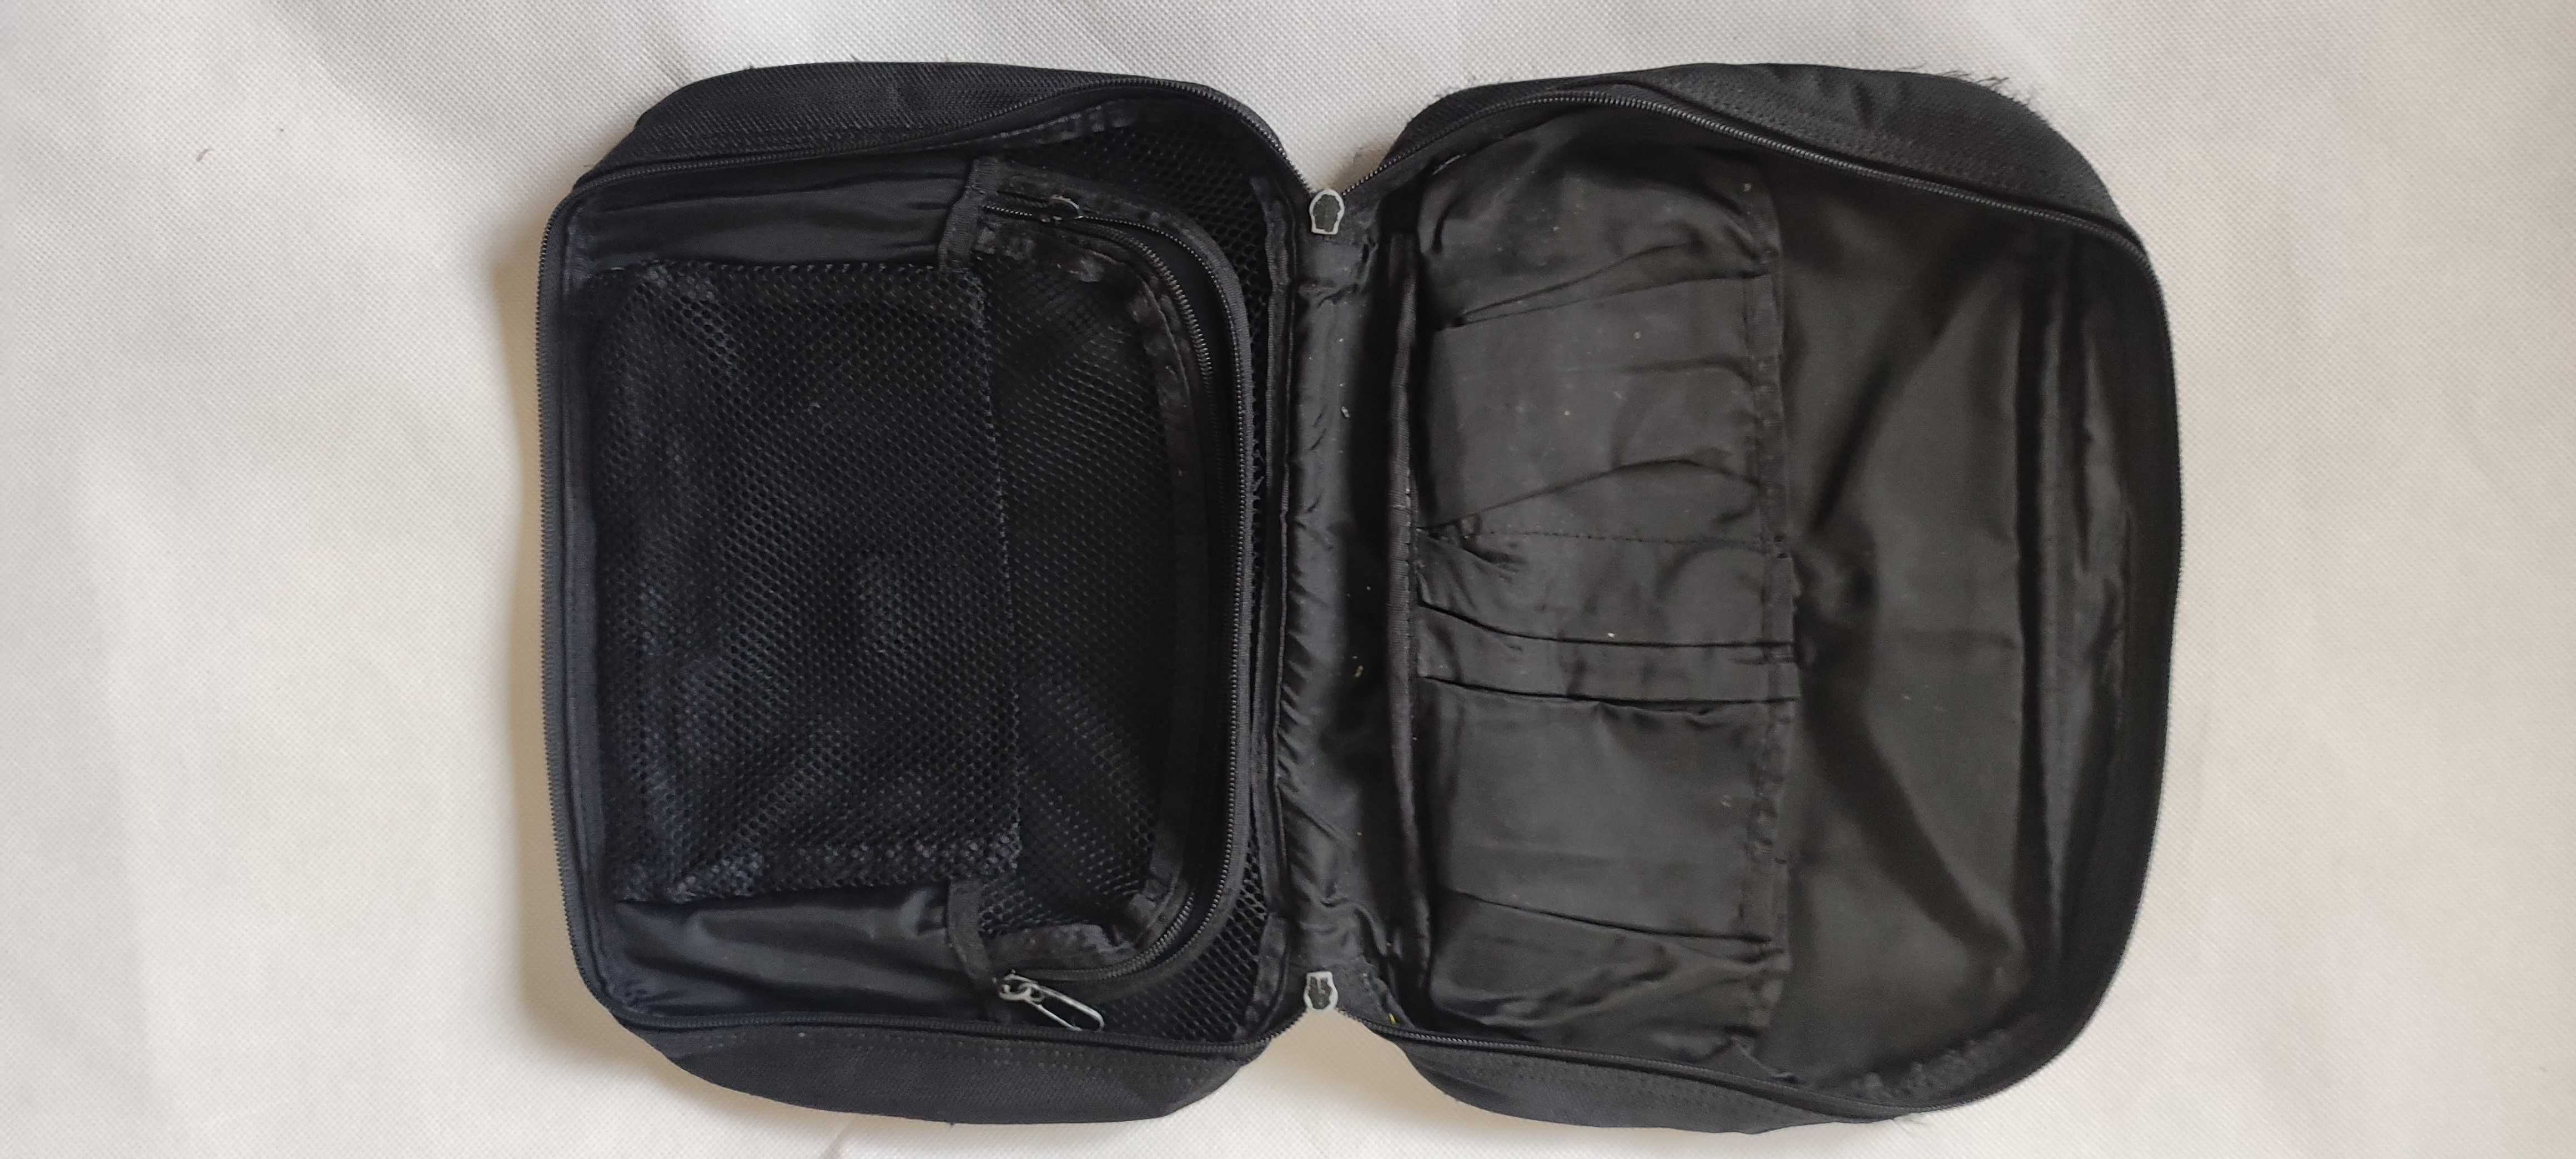 Дорожные сумки для аксессуаров и гигиены принадлежностей.